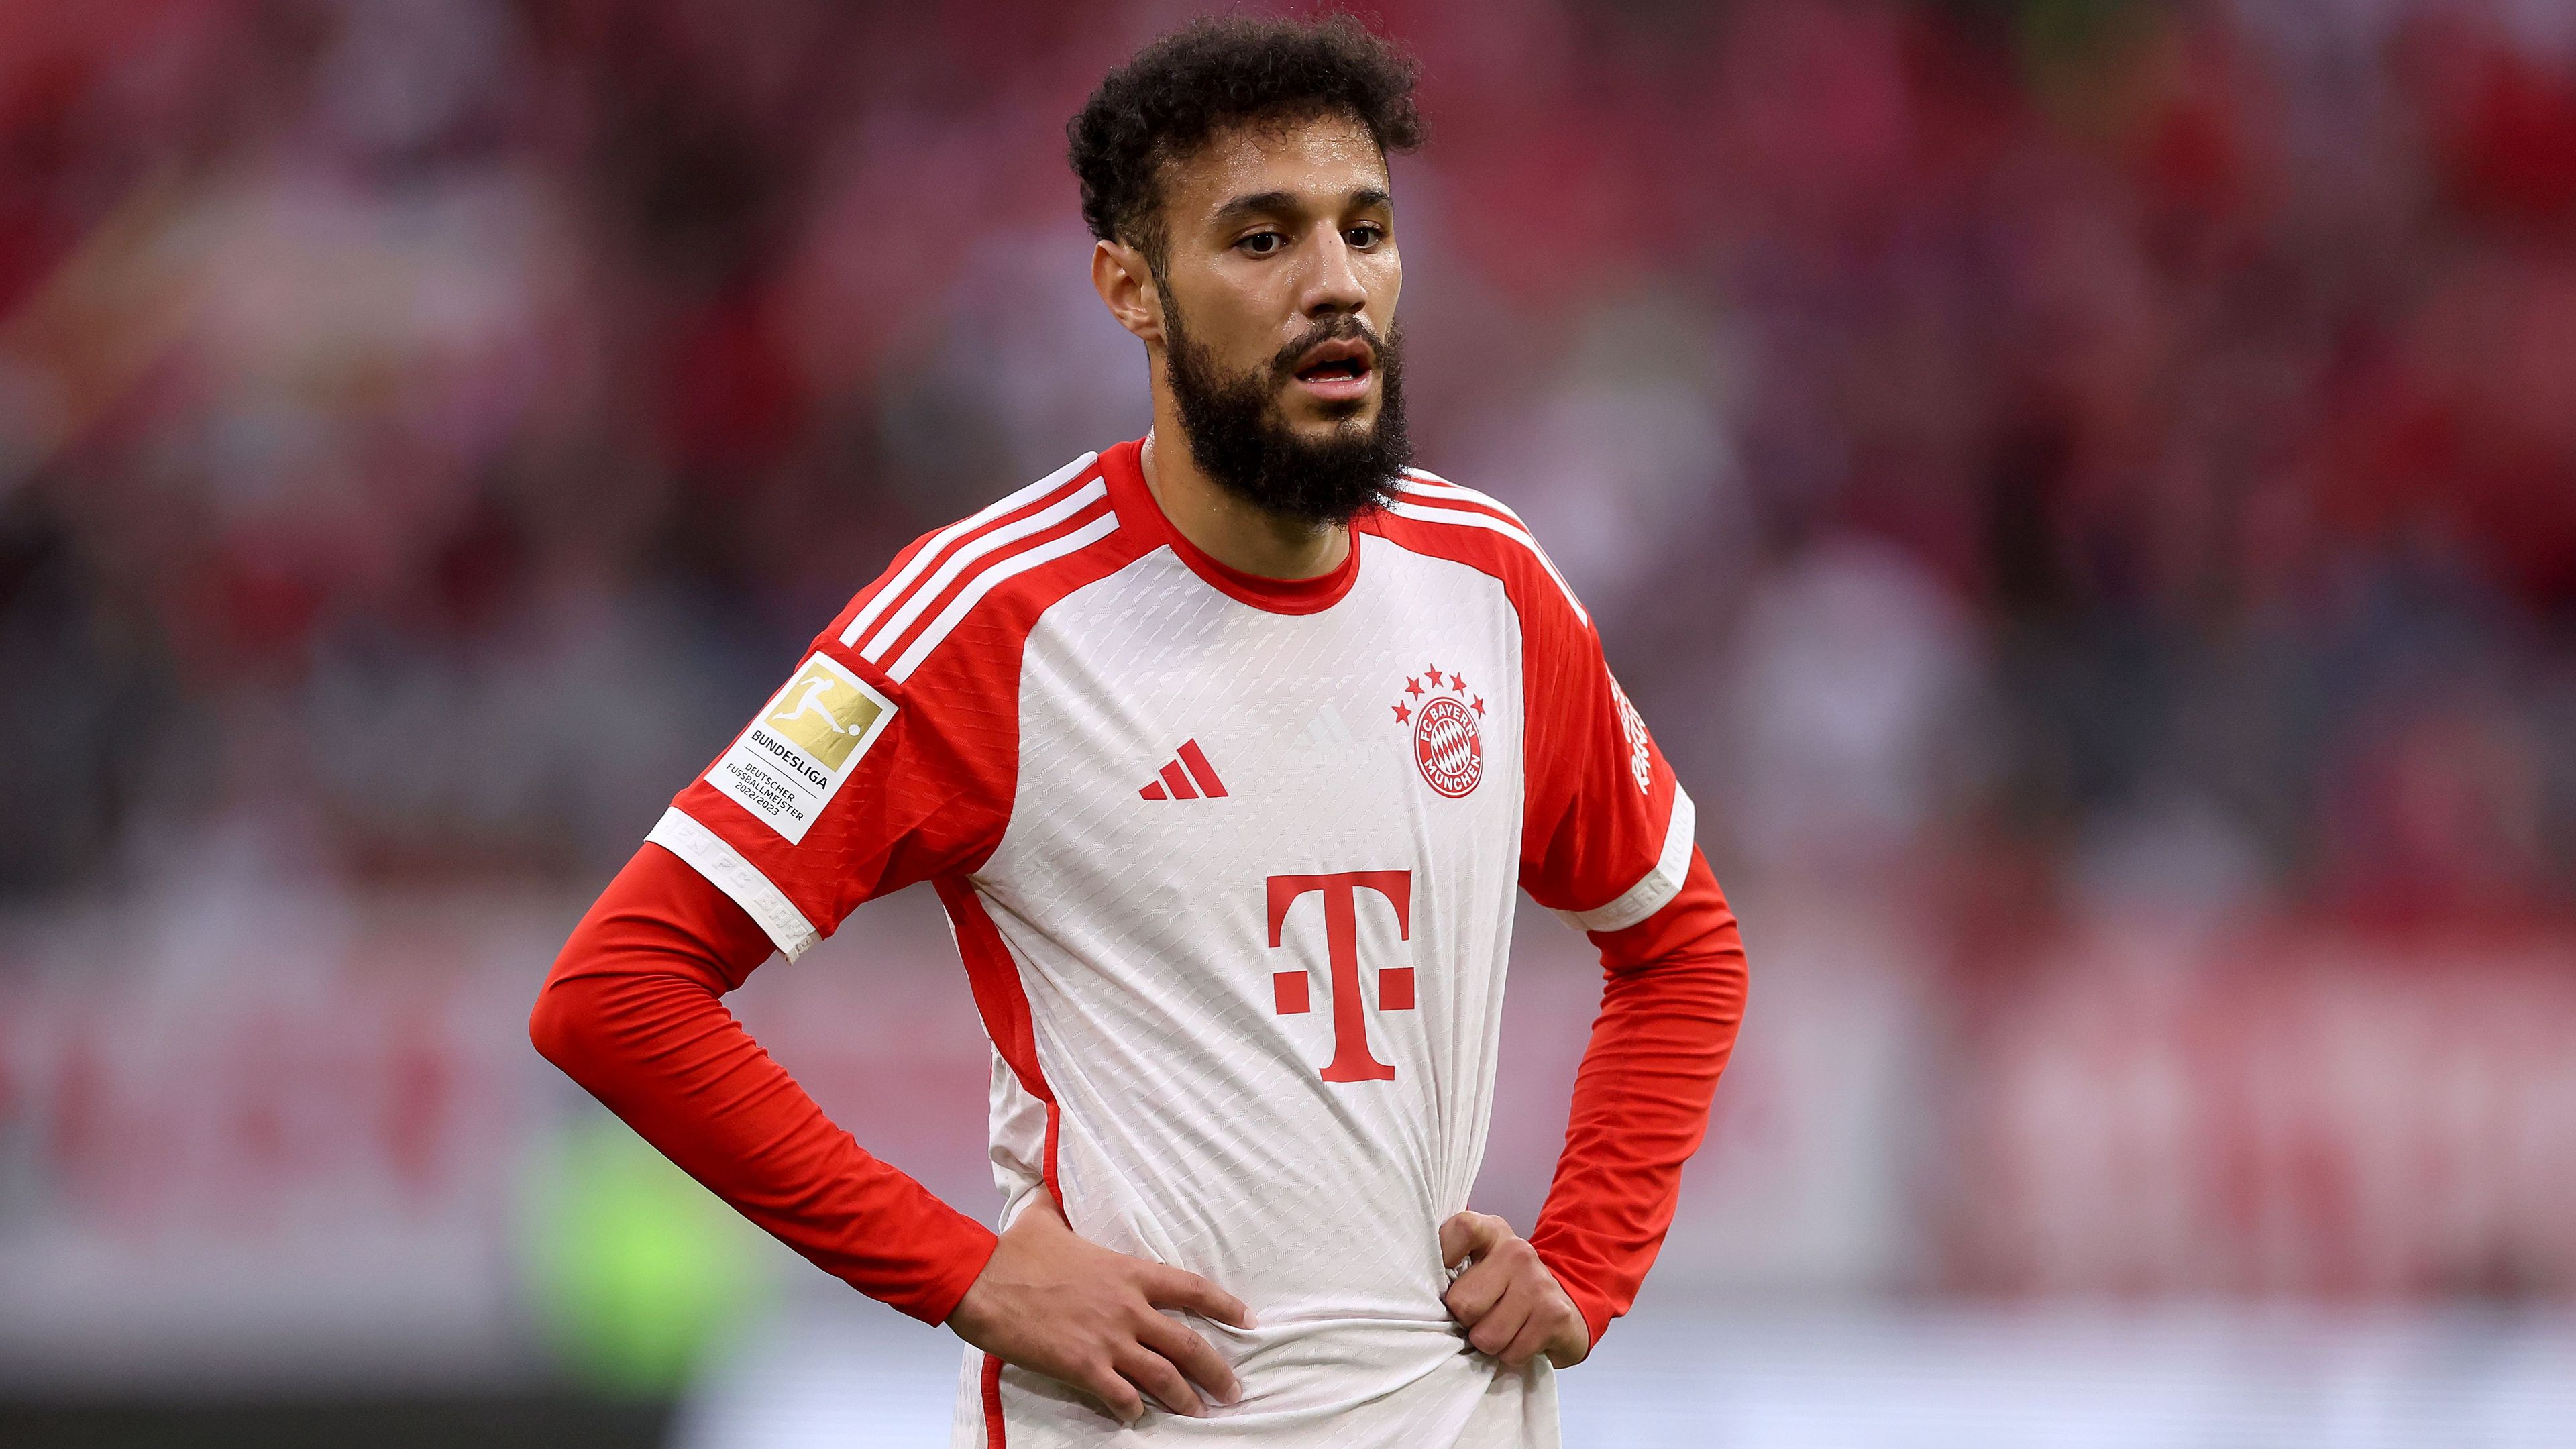 Mi lesz Nusszair Mazraoui sorsa a Bayern Münchennél?